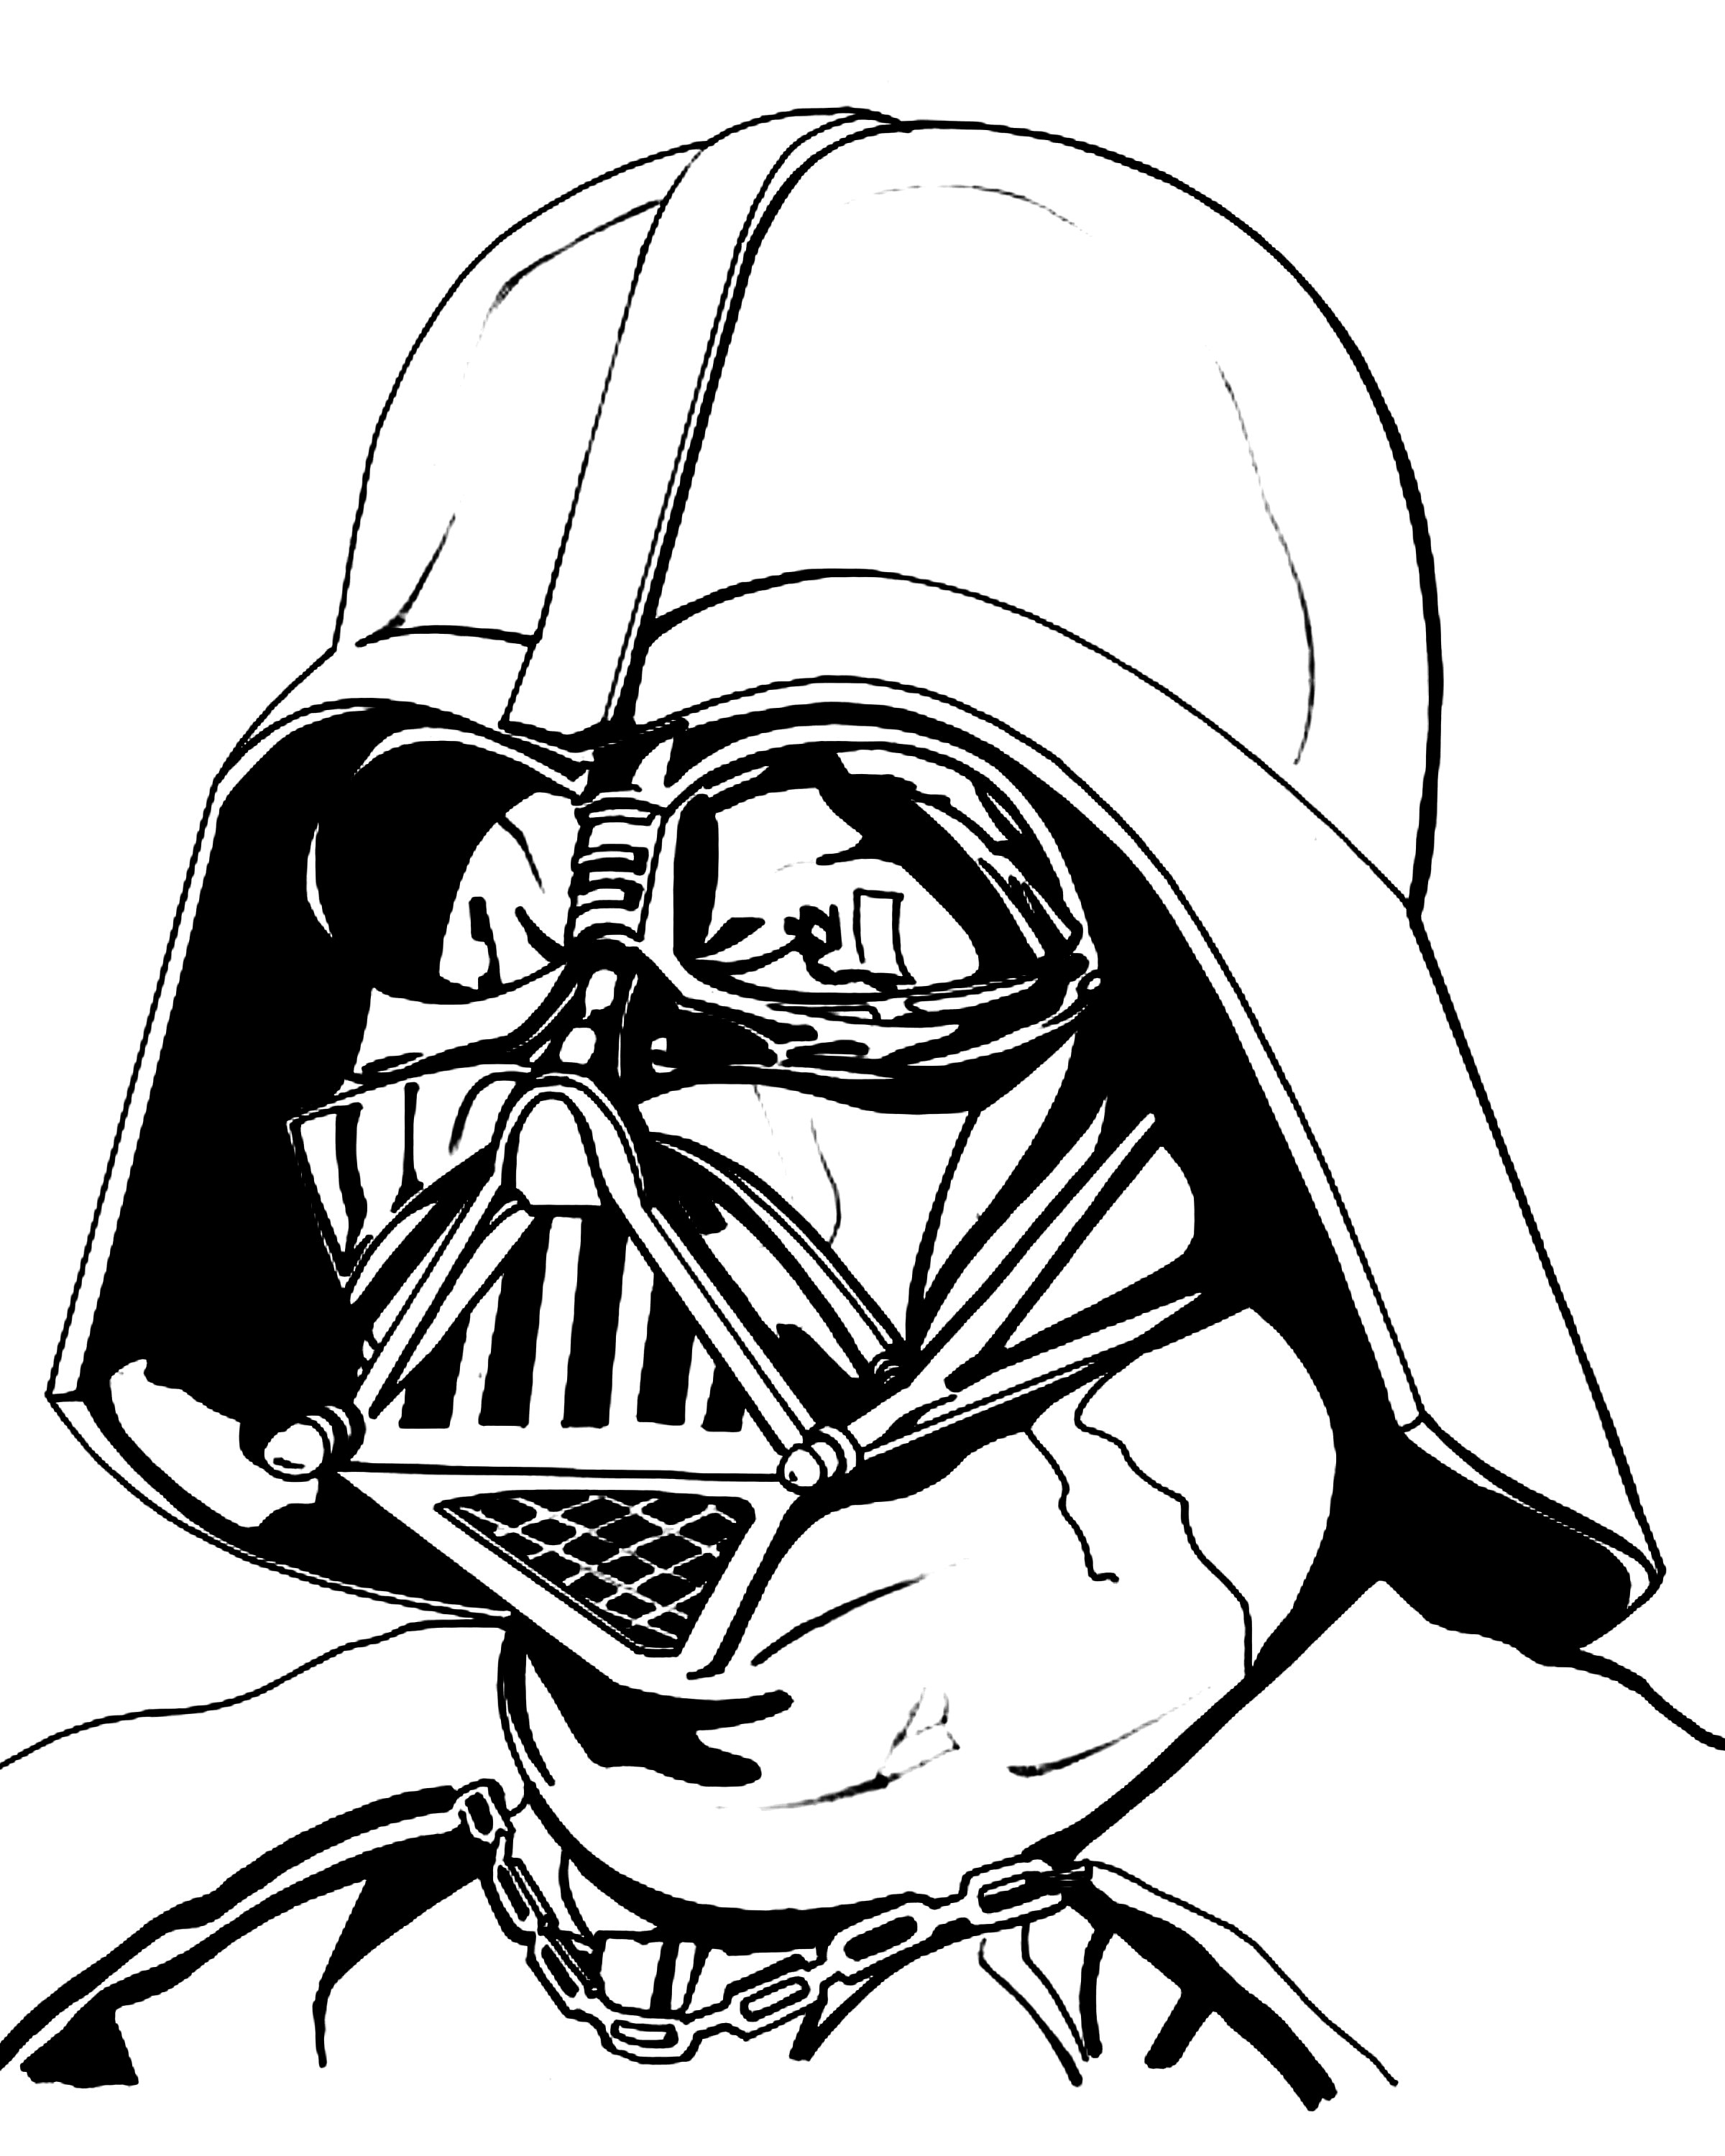 Darth Vader Drawing at GetDrawings Free download